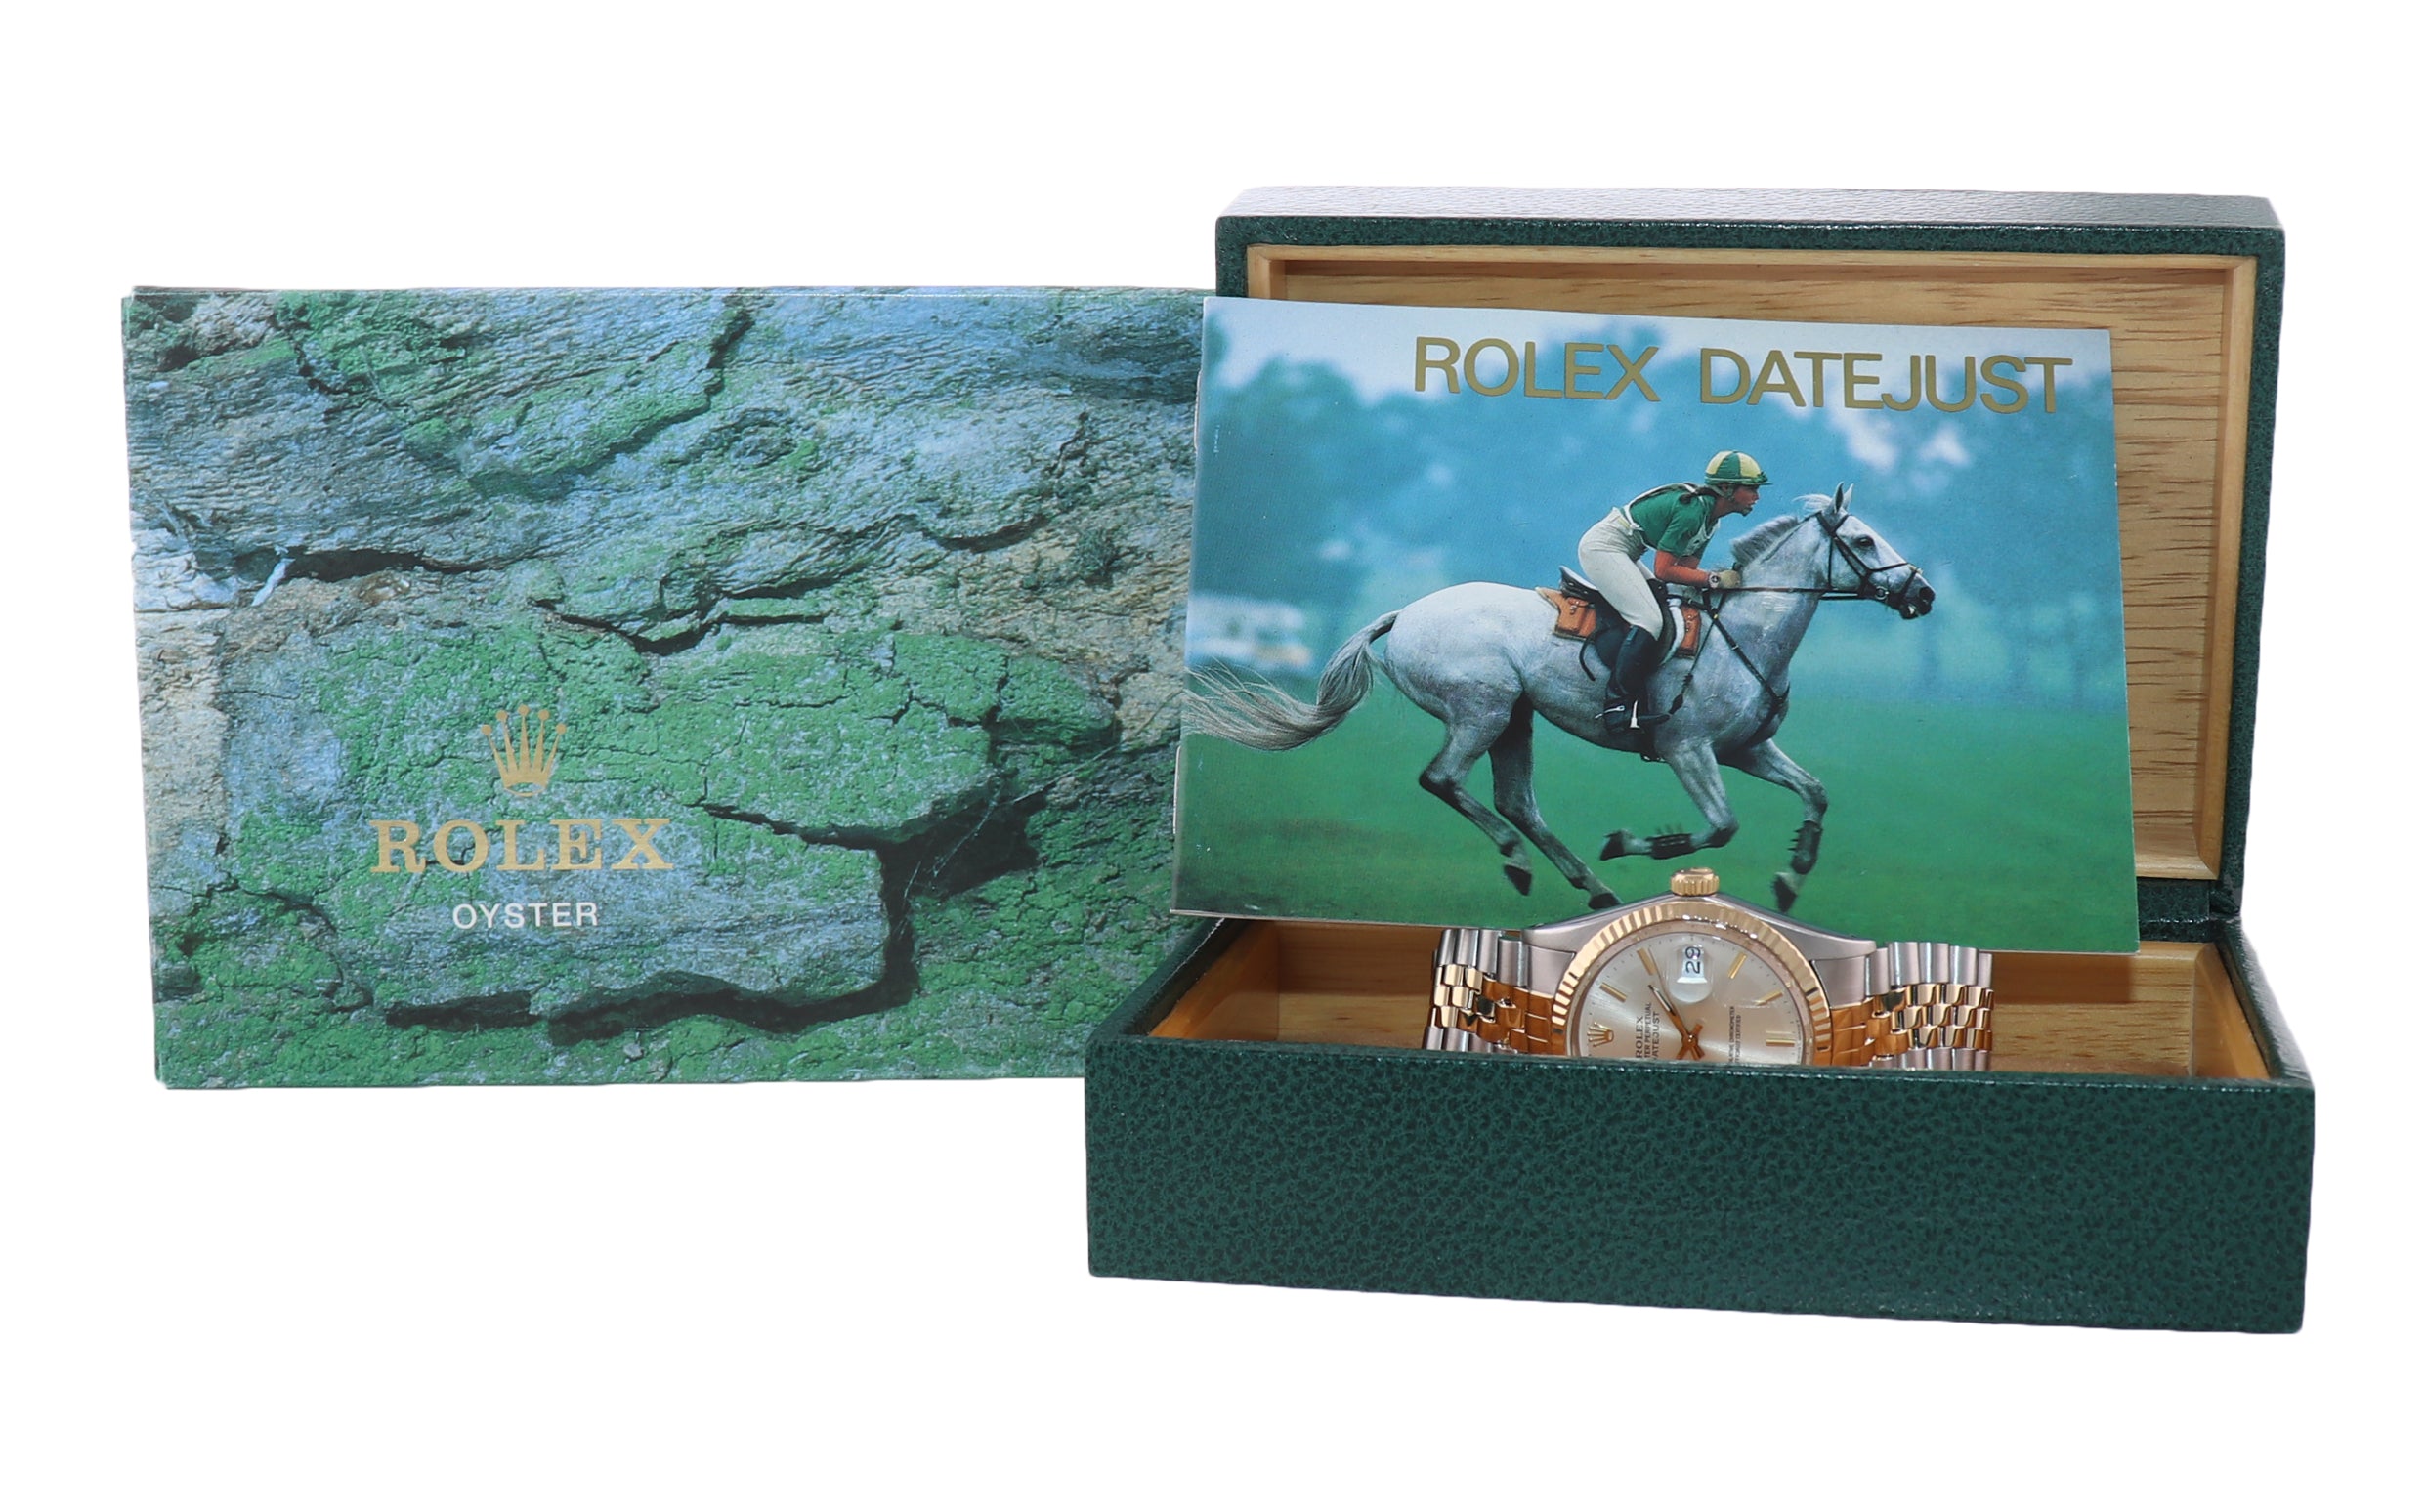 Rolex DateJust 16013 Two-Tone 18k Gold Steel Jubilee Silver Dial Watch Box